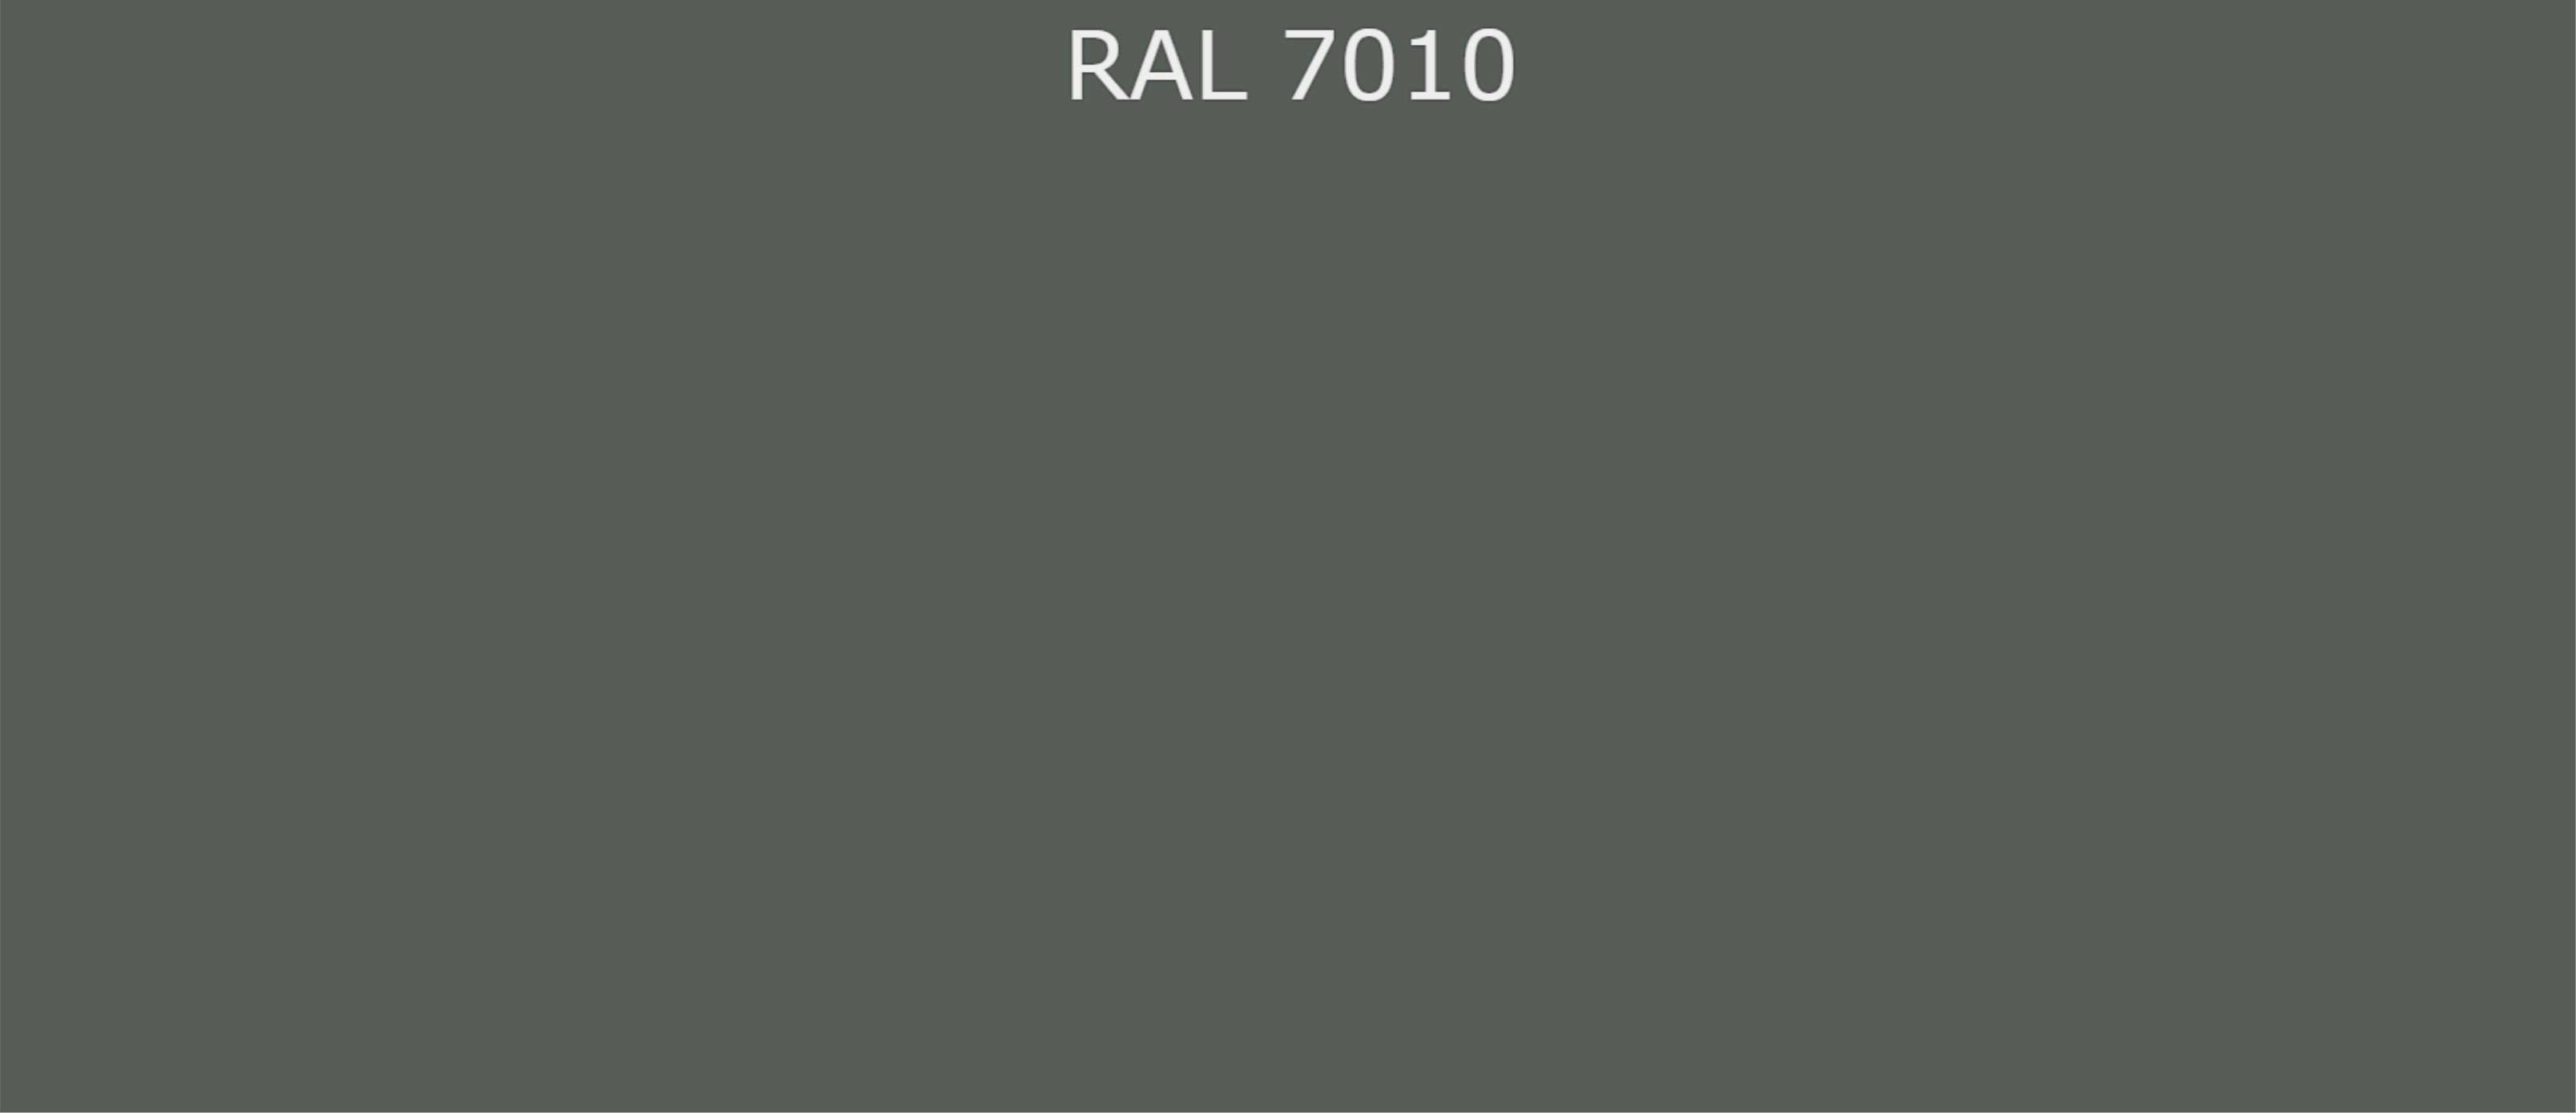 Ral 7024 эмаль по ржавчине. RAL 7016 серый антрацит. Рал 7024 антрацит. RAL антрацит 7016. Антрацит цвет рал 7016.